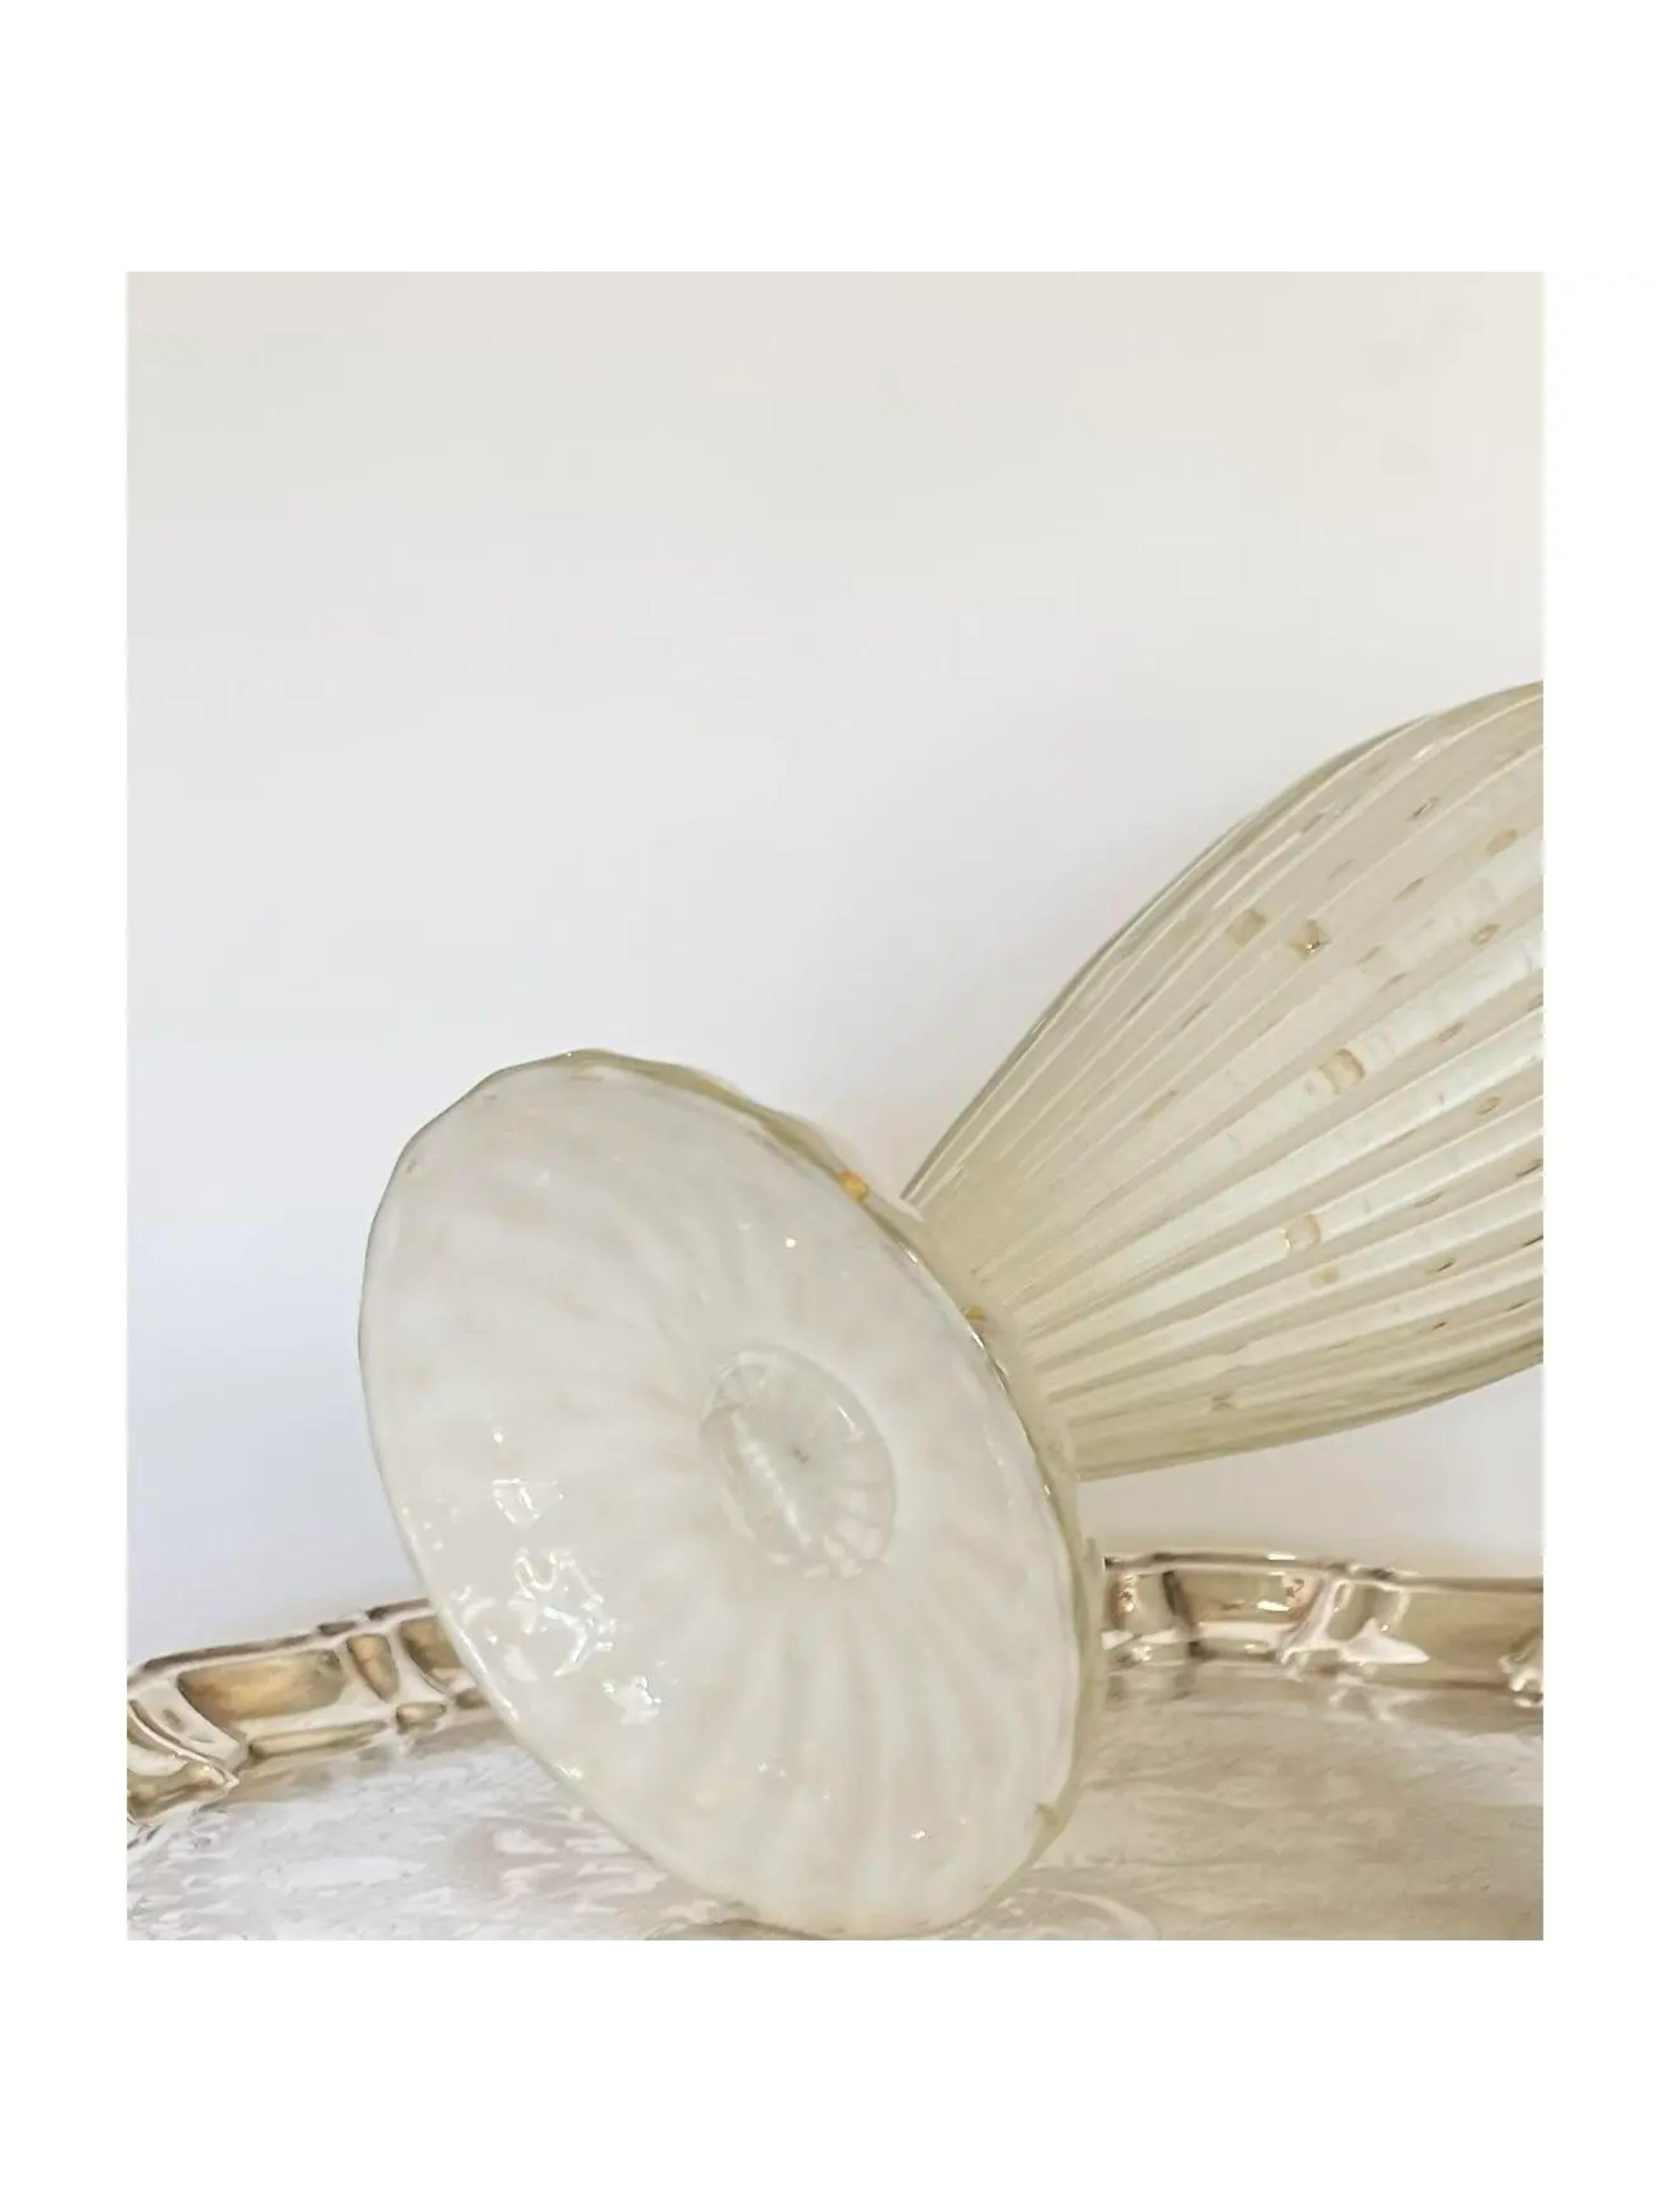 Énorme carafe à décanter en murano Alfredo Barbini, de 19 pouces, de style moderne du milieu du siècle. Il comprend le bouchon d'origine avec la bulle prévue et les inclusions d'or. 

Informations complémentaires :
MATERIAL : verre de